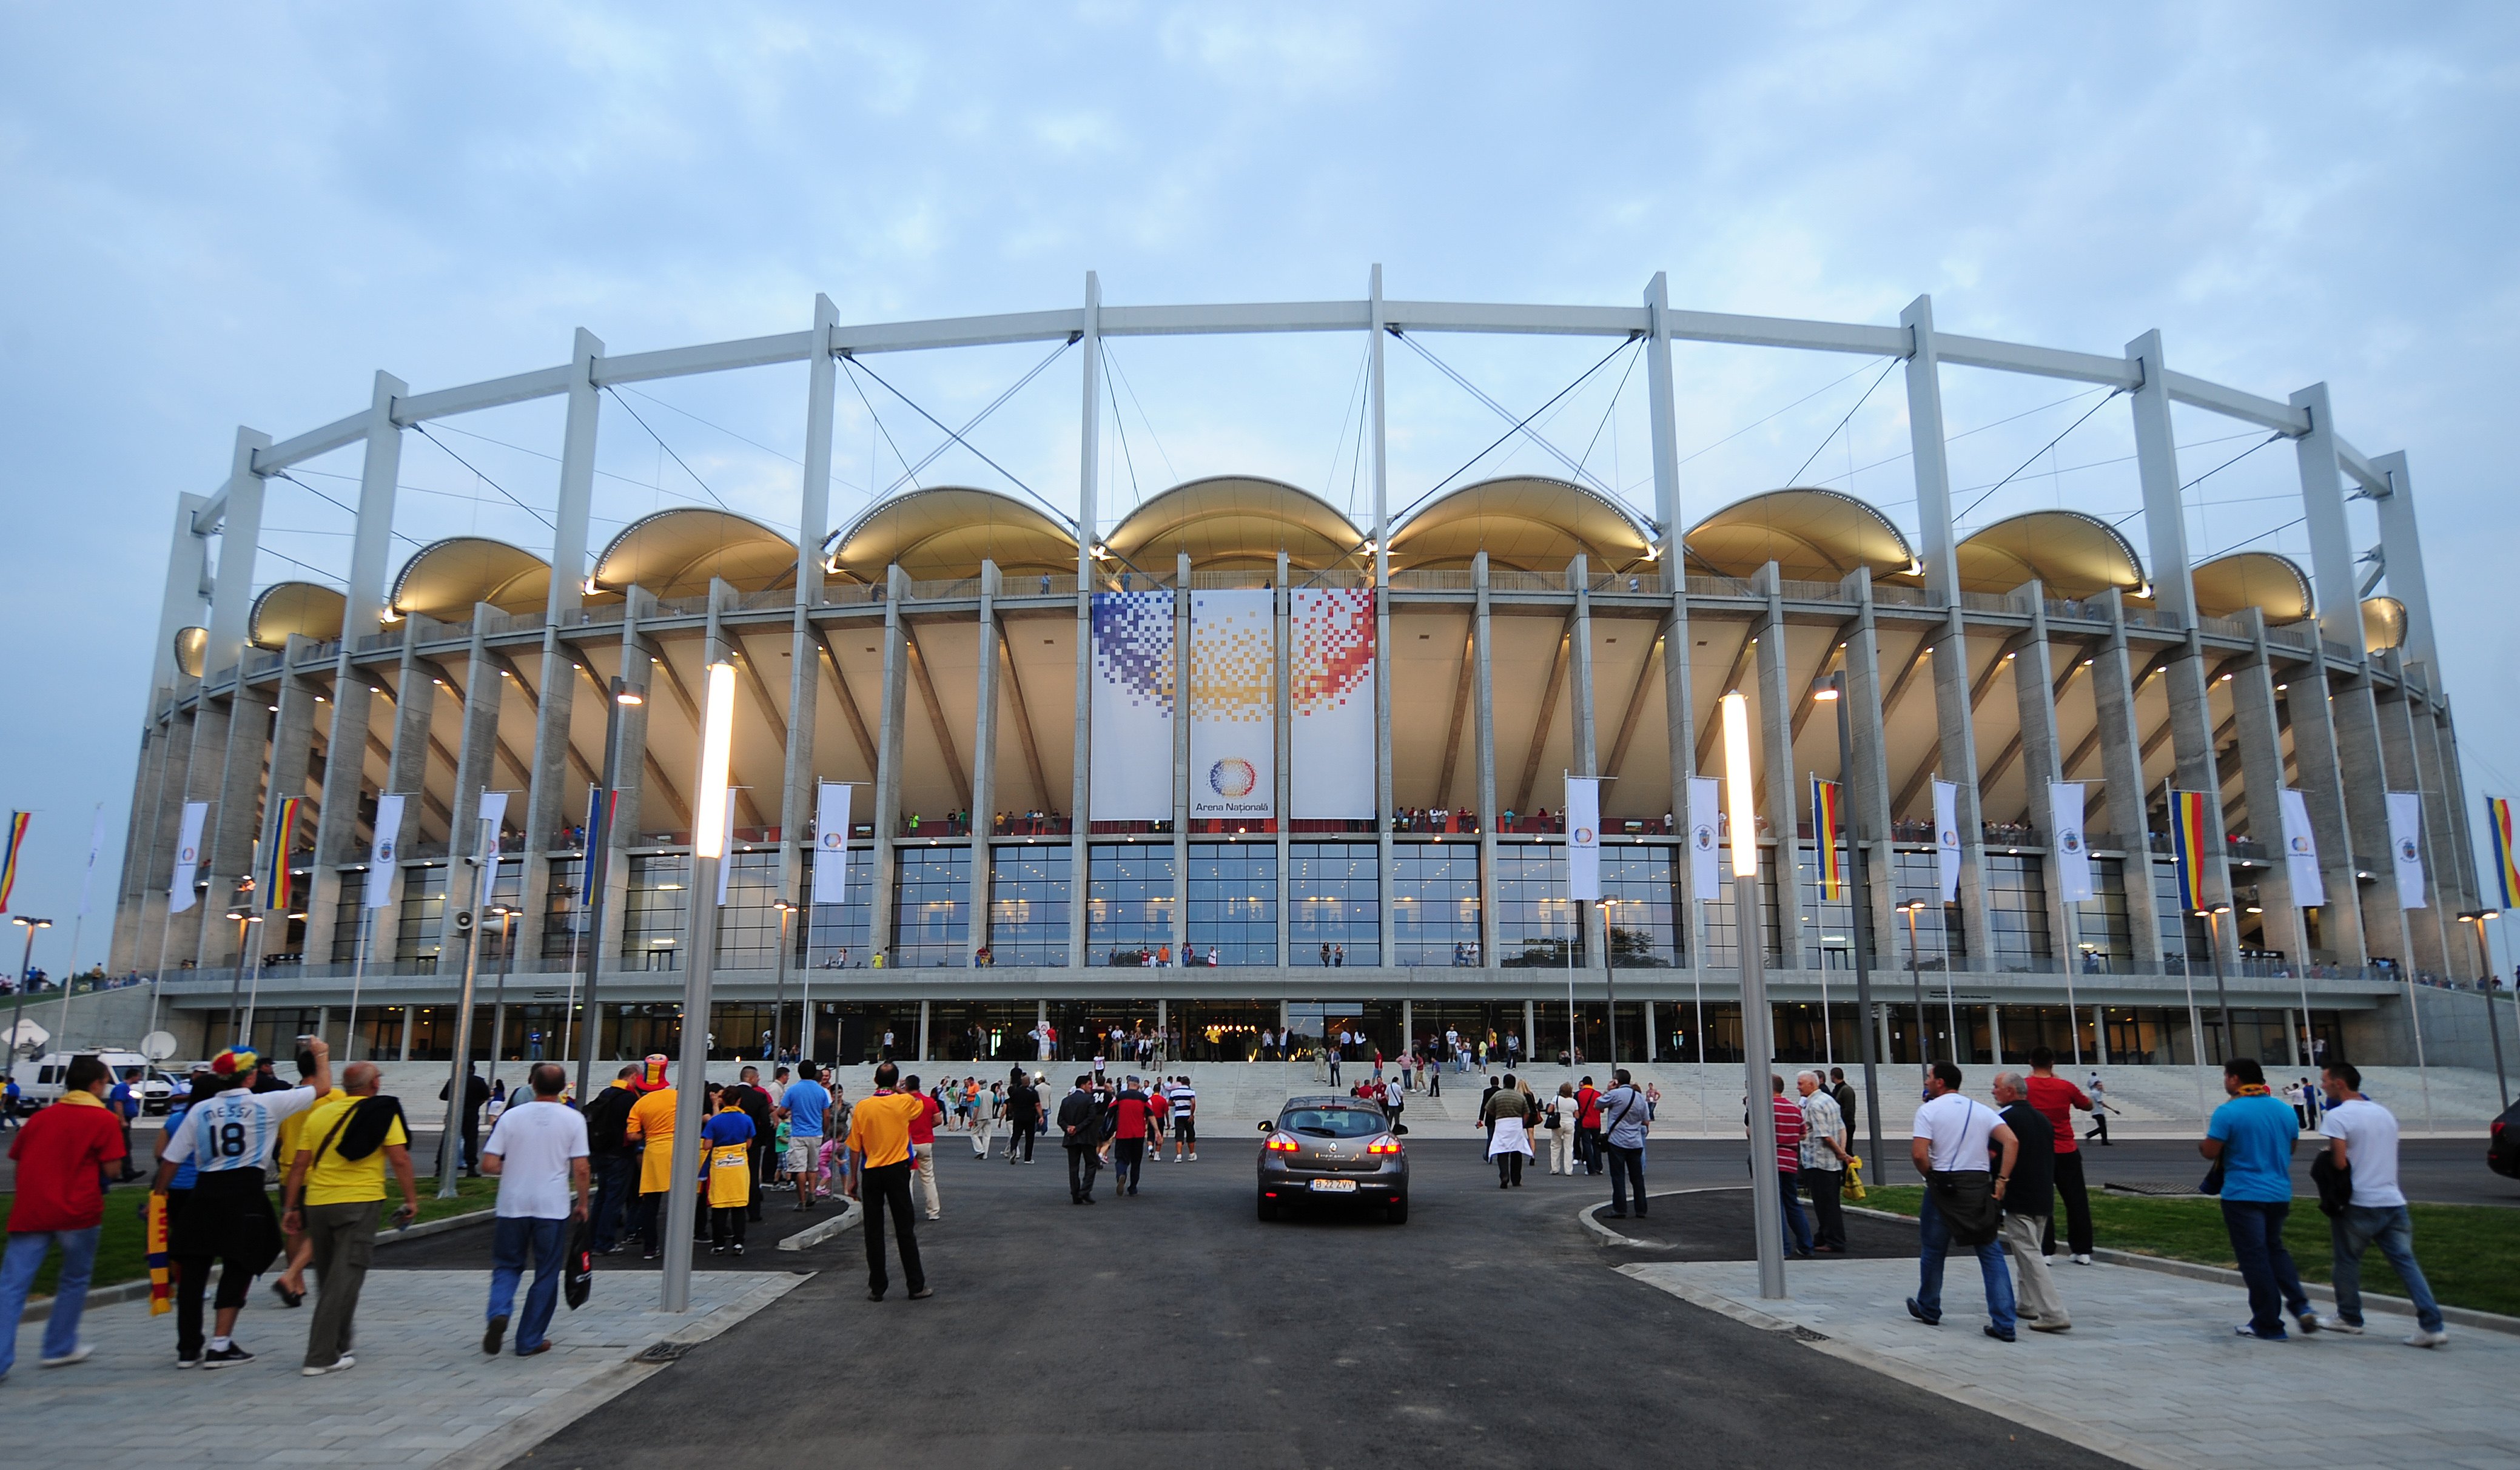 Nem kap engedélyt, ezért zárva Románia legdrágább stadionja